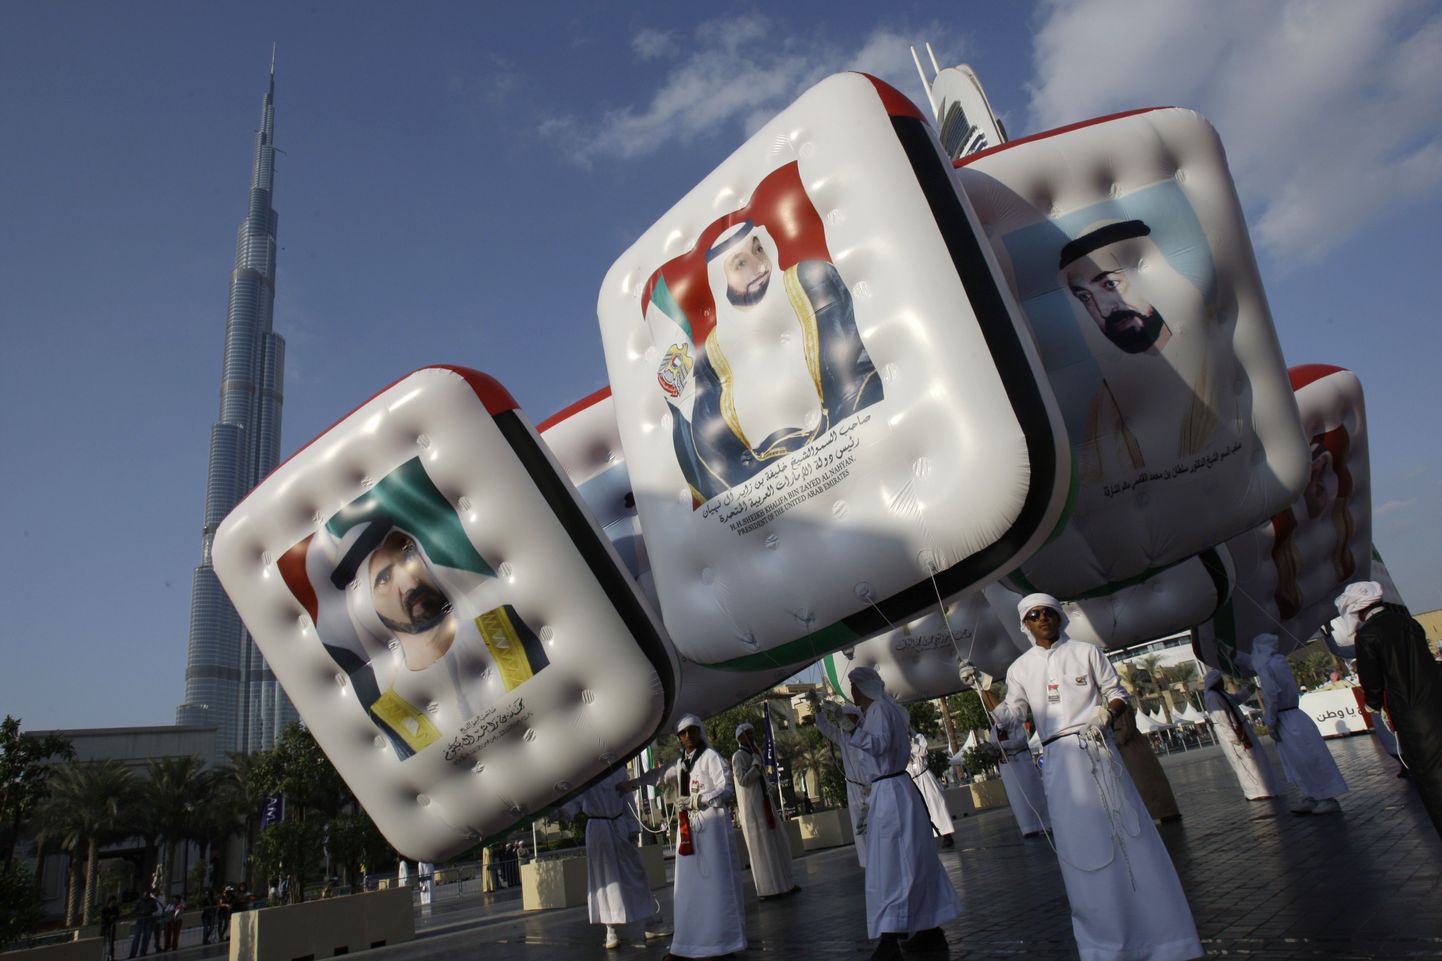 Mehed eilsel Araabia Ühendemiraatide rahvusvpäeval Dubais juhtide piltidega plakateid kandmas. Šeik Mohhamed kinnitas eile ajakirjanikele, et välismaailm ei saa Dubais toimuvast midagi aru ning tegelikult on majandus tugev ja heal järjel.